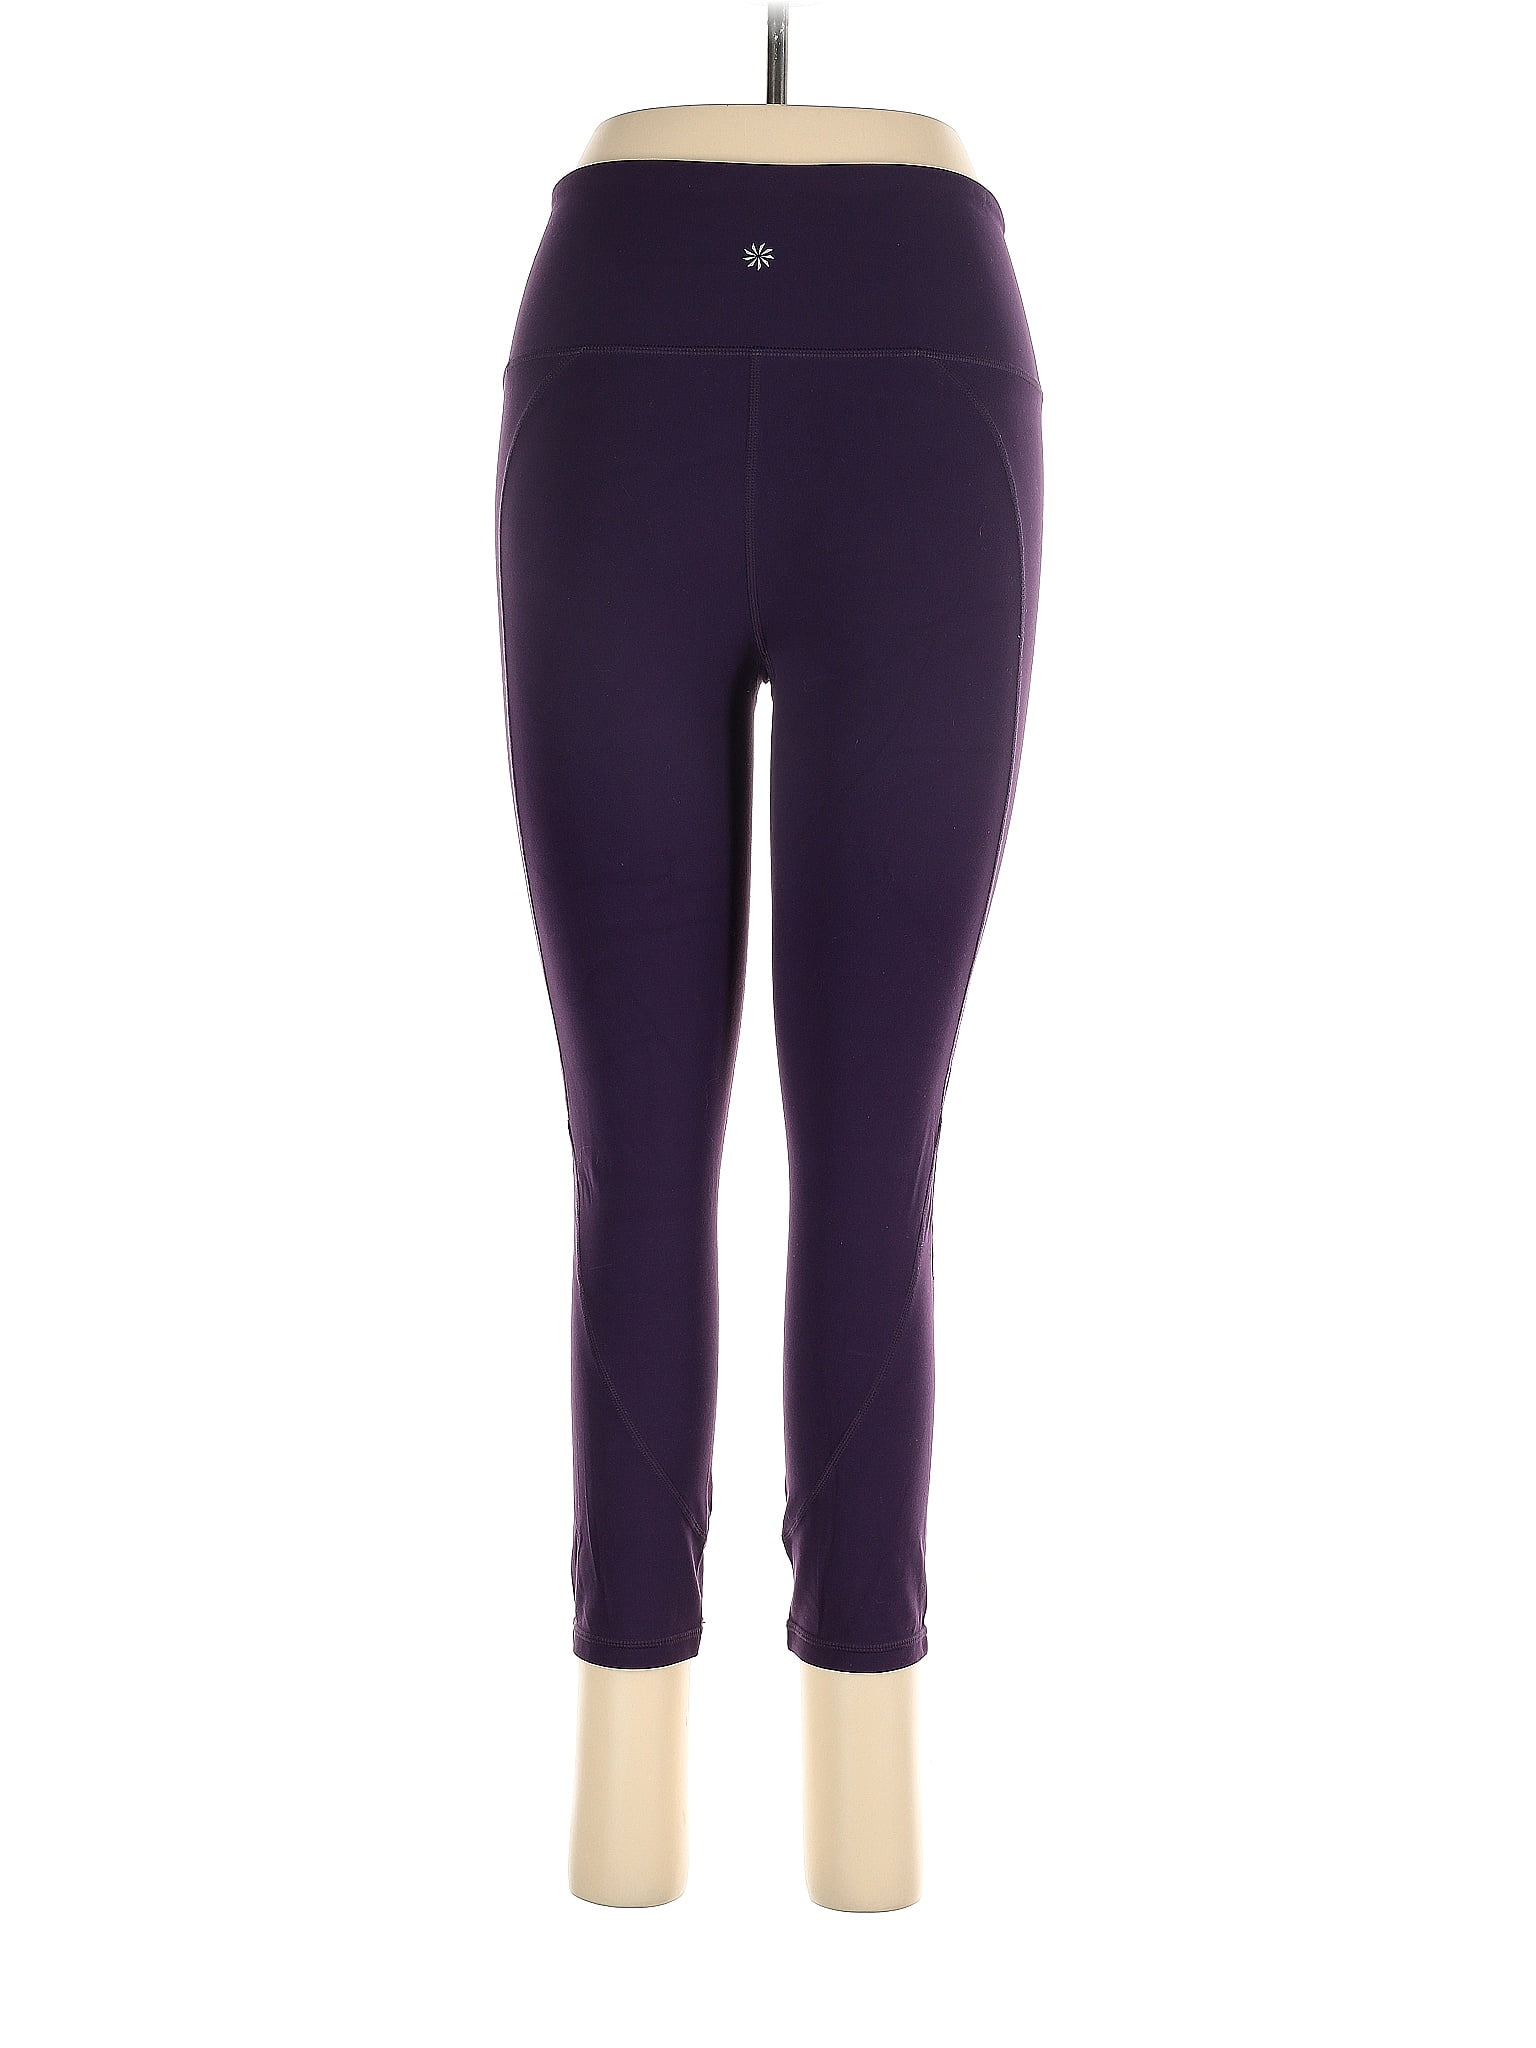 Apana Purple Active Pants Size XL - 68% off